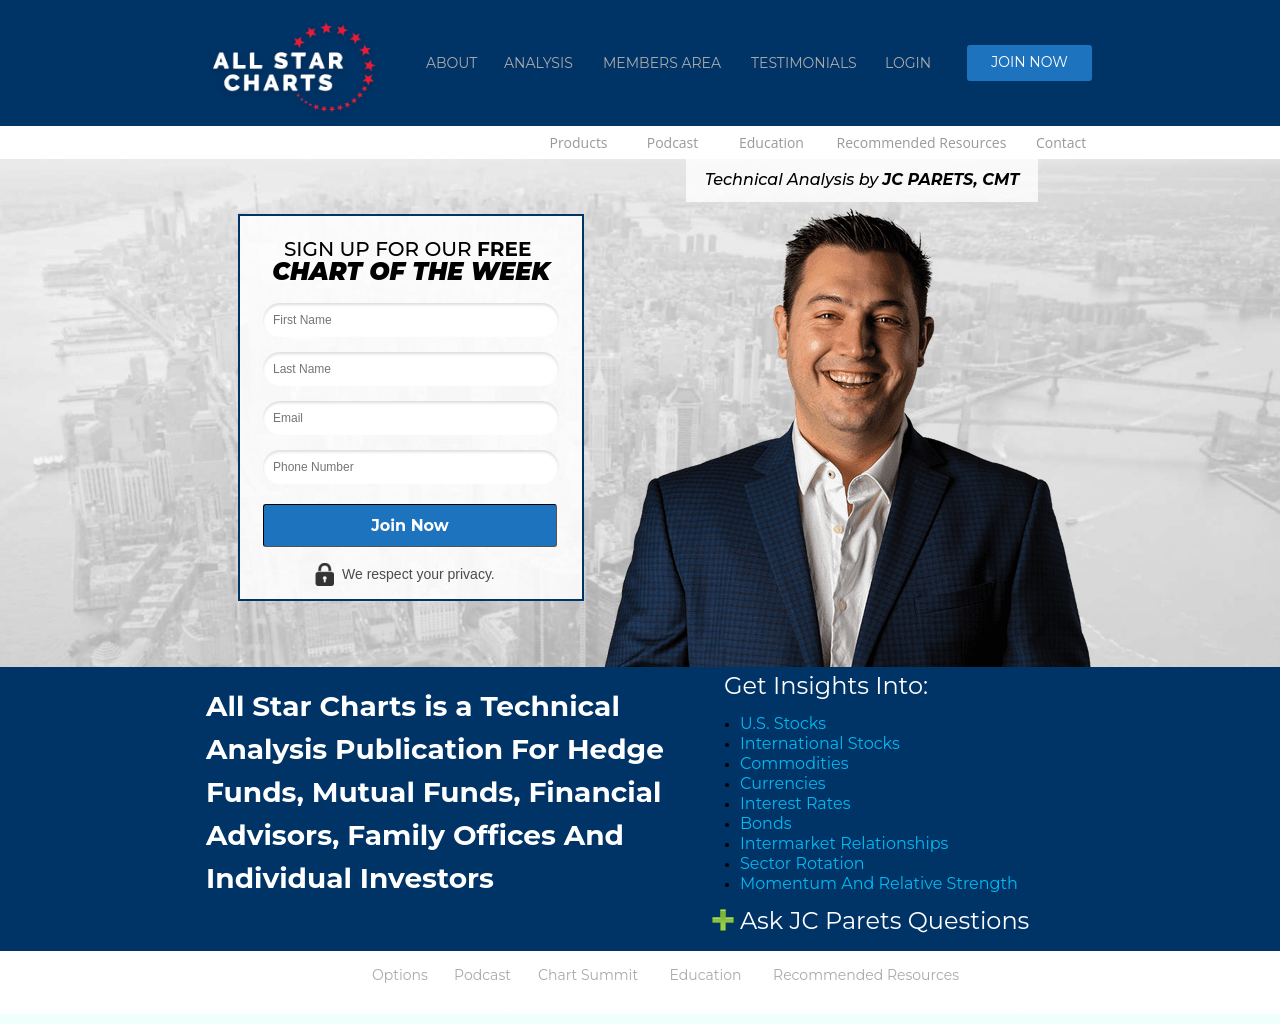 allstarcharts.com